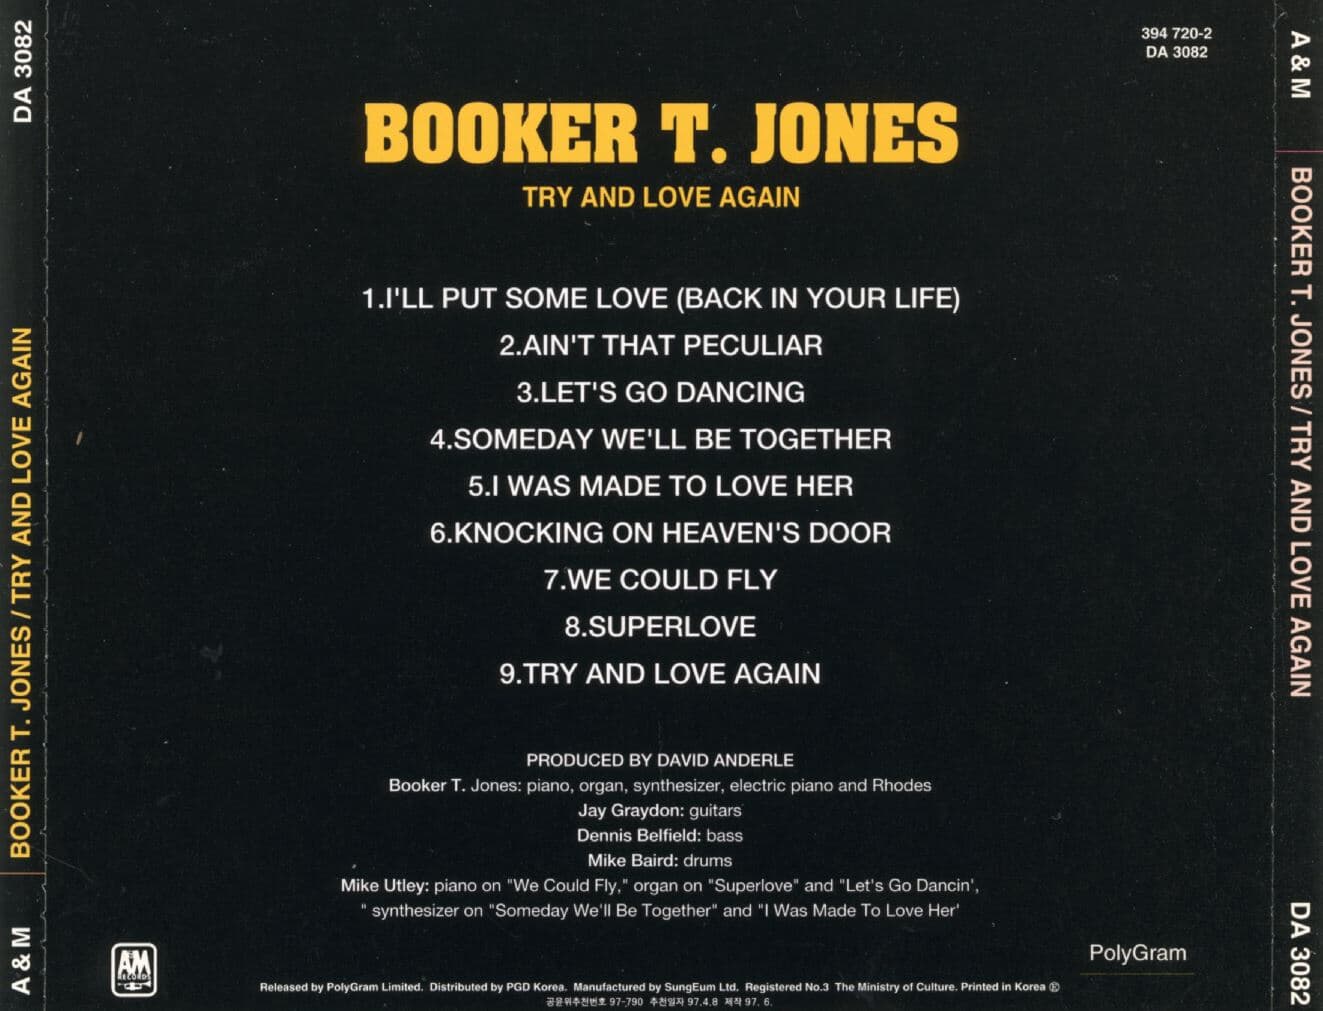 부커 티 존스 - Booker T. Jones - Try And Love Again